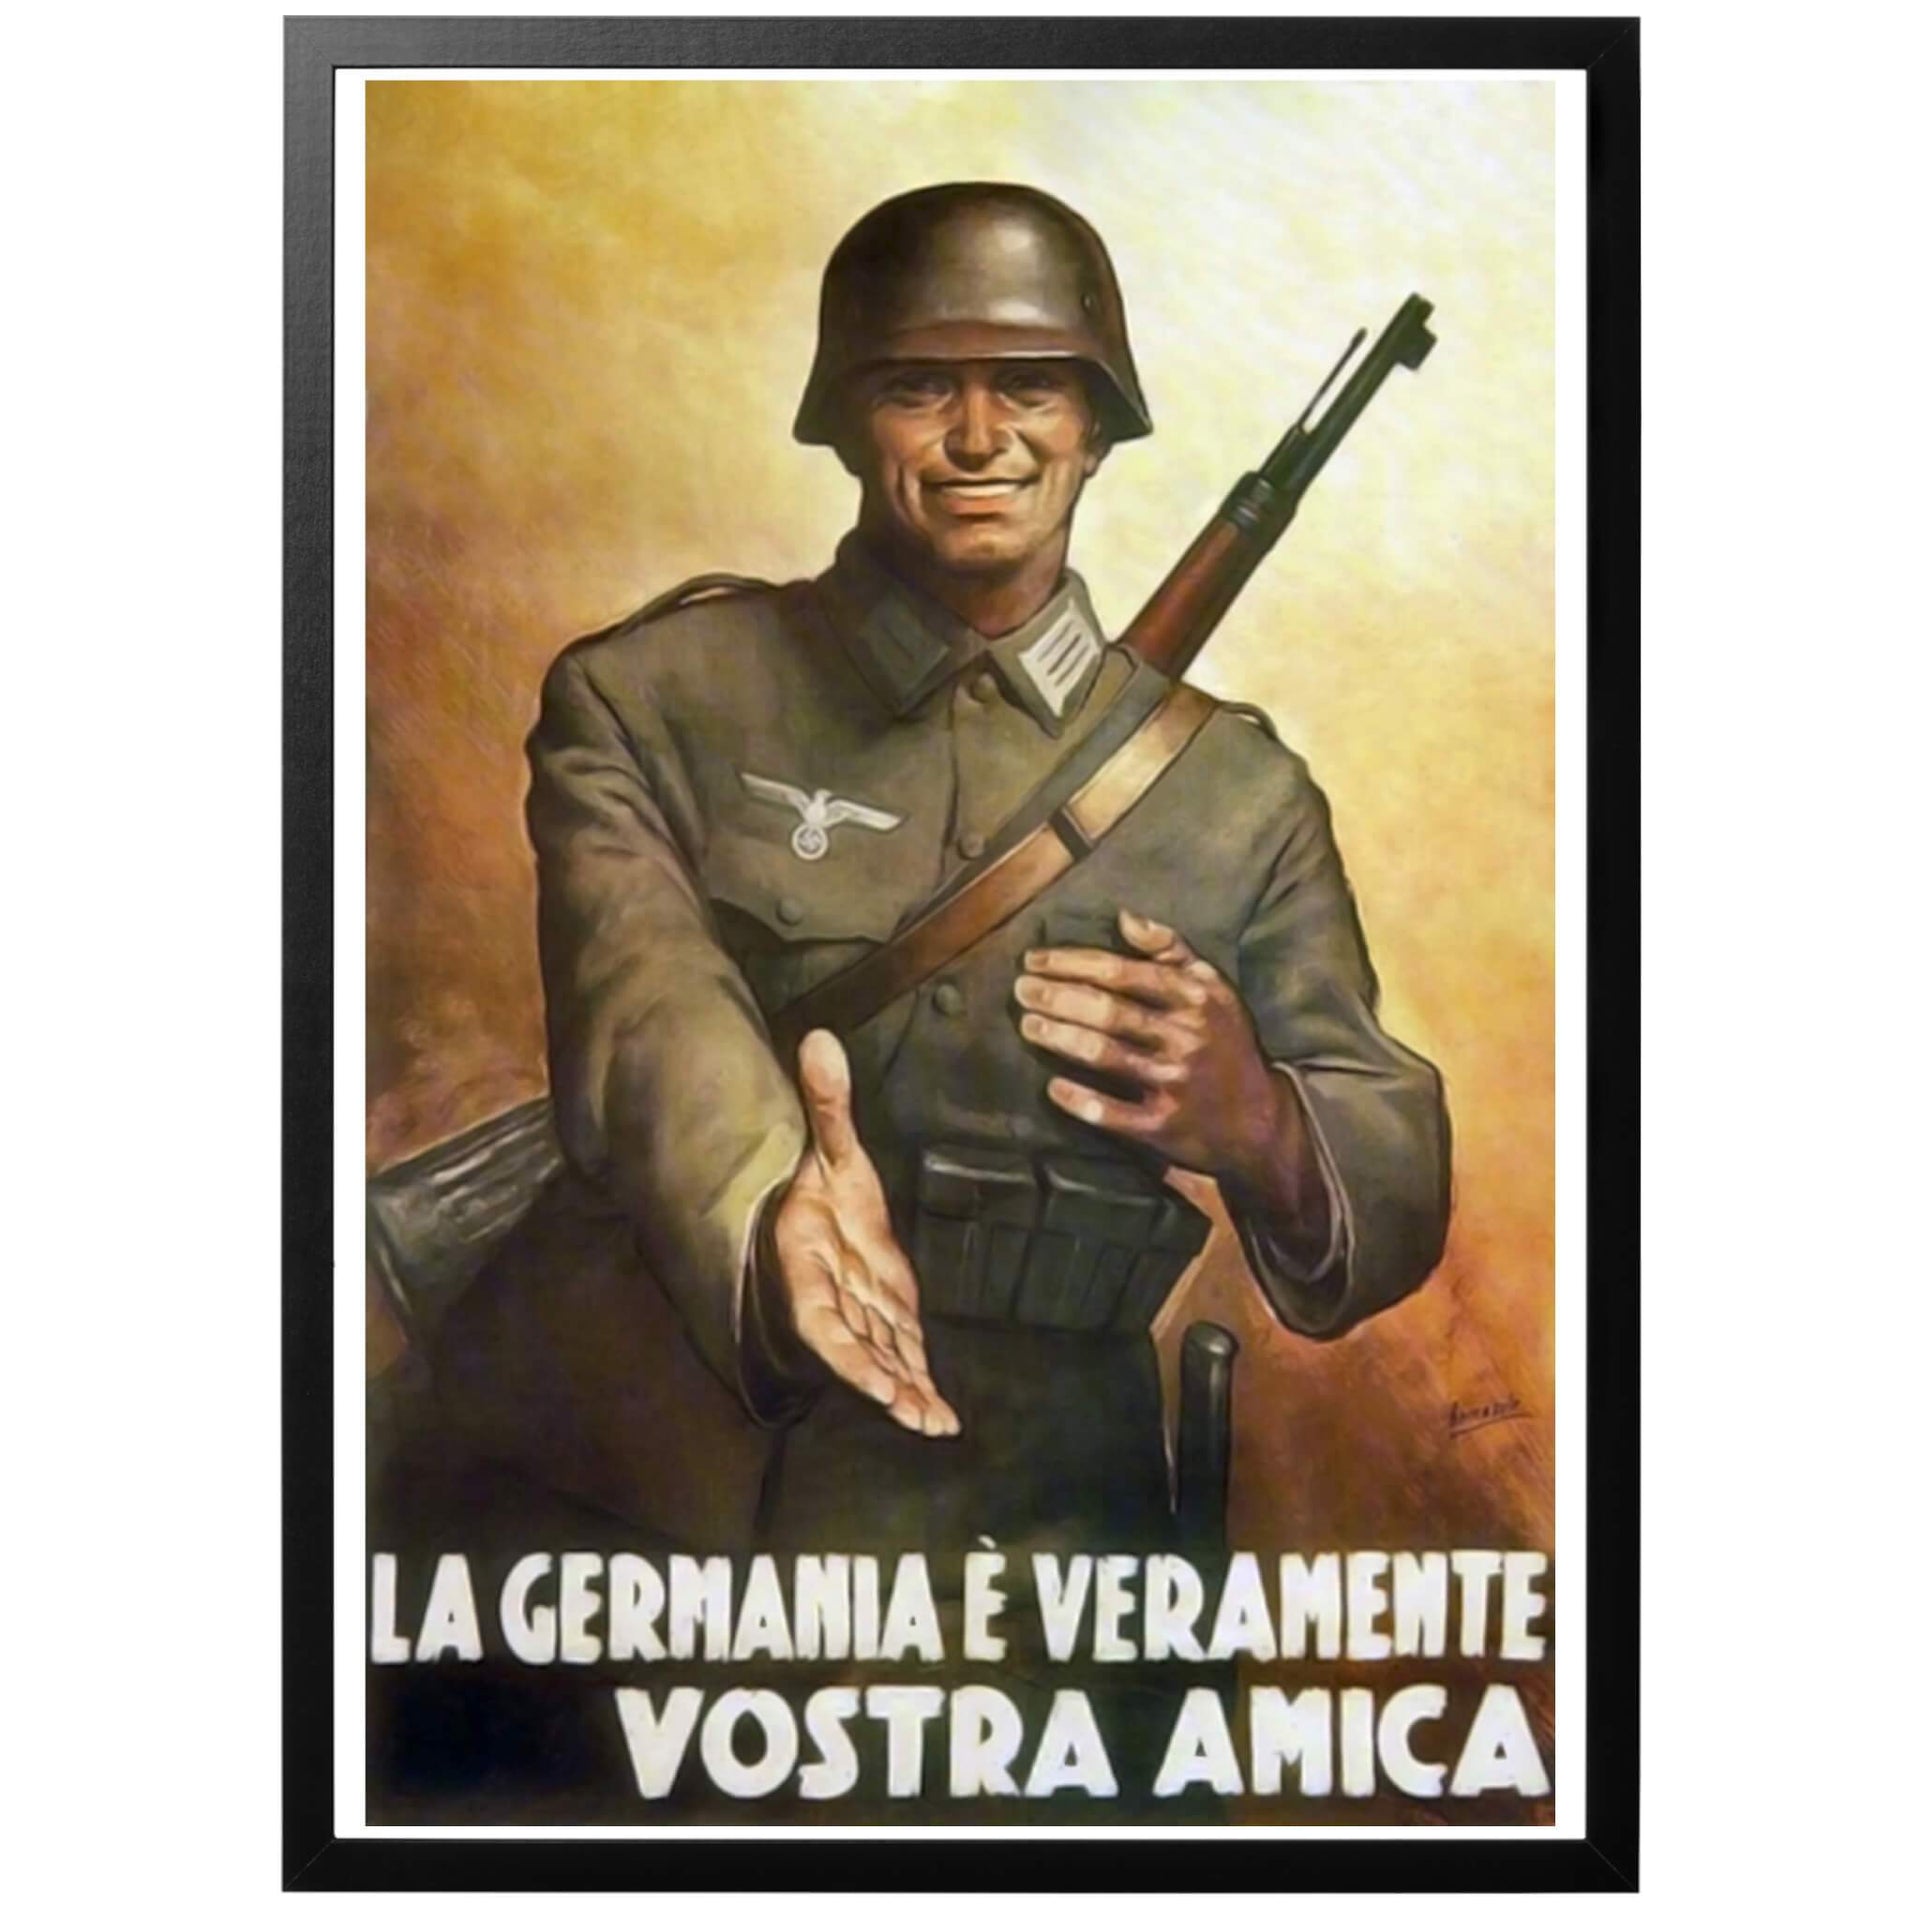 La germania é veramente vostra amica Sv - "Tyskland är verkligen din vän" Italiensk WWII affisch. Italiensk propagandaposter som uppmuntrar samarbete med de tyska trupperna.  Välj till ram - och få din poster inramad och klar! Frakt 59 kr inom Sverige - fri frakt från 450 kr! 